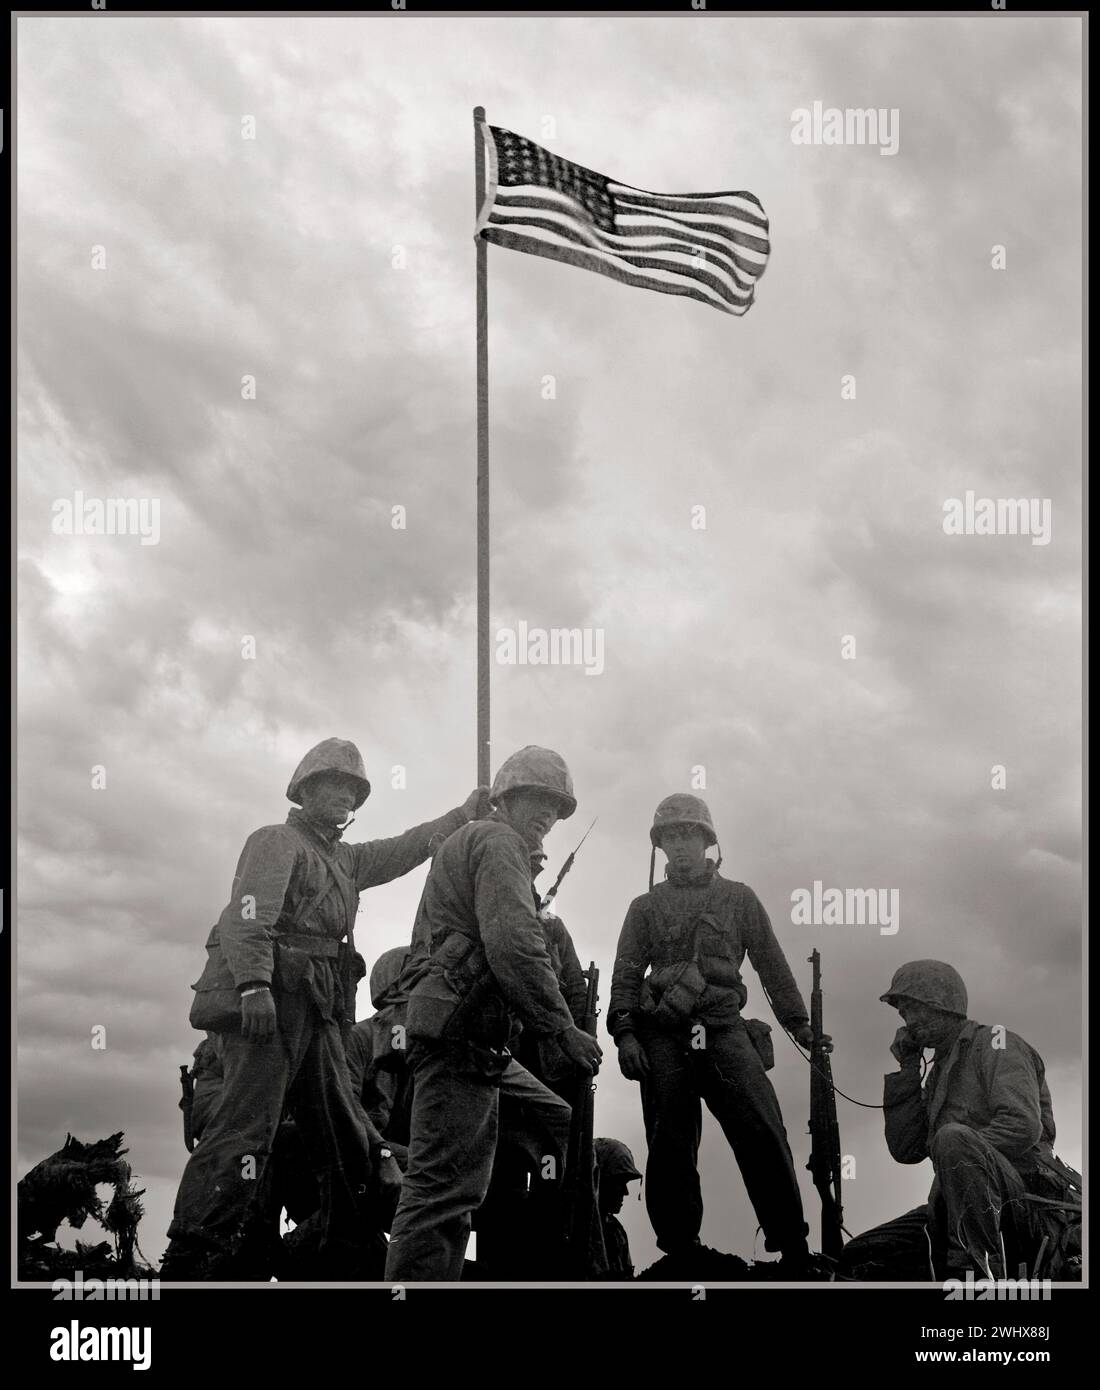 IWO JIMA WW2 prima bandiera issata dai Marines americani febbraio 1945 la battaglia di Iwo Jima fu una grande battaglia in cui il corpo dei Marines e la Marina degli Stati Uniti sbarcarono e alla fine catturarono l'isola di Iwo Jima dall'esercito imperiale giapponese durante la seconda guerra mondiale Seconda guerra mondiale nel Pacifico Foto Stock